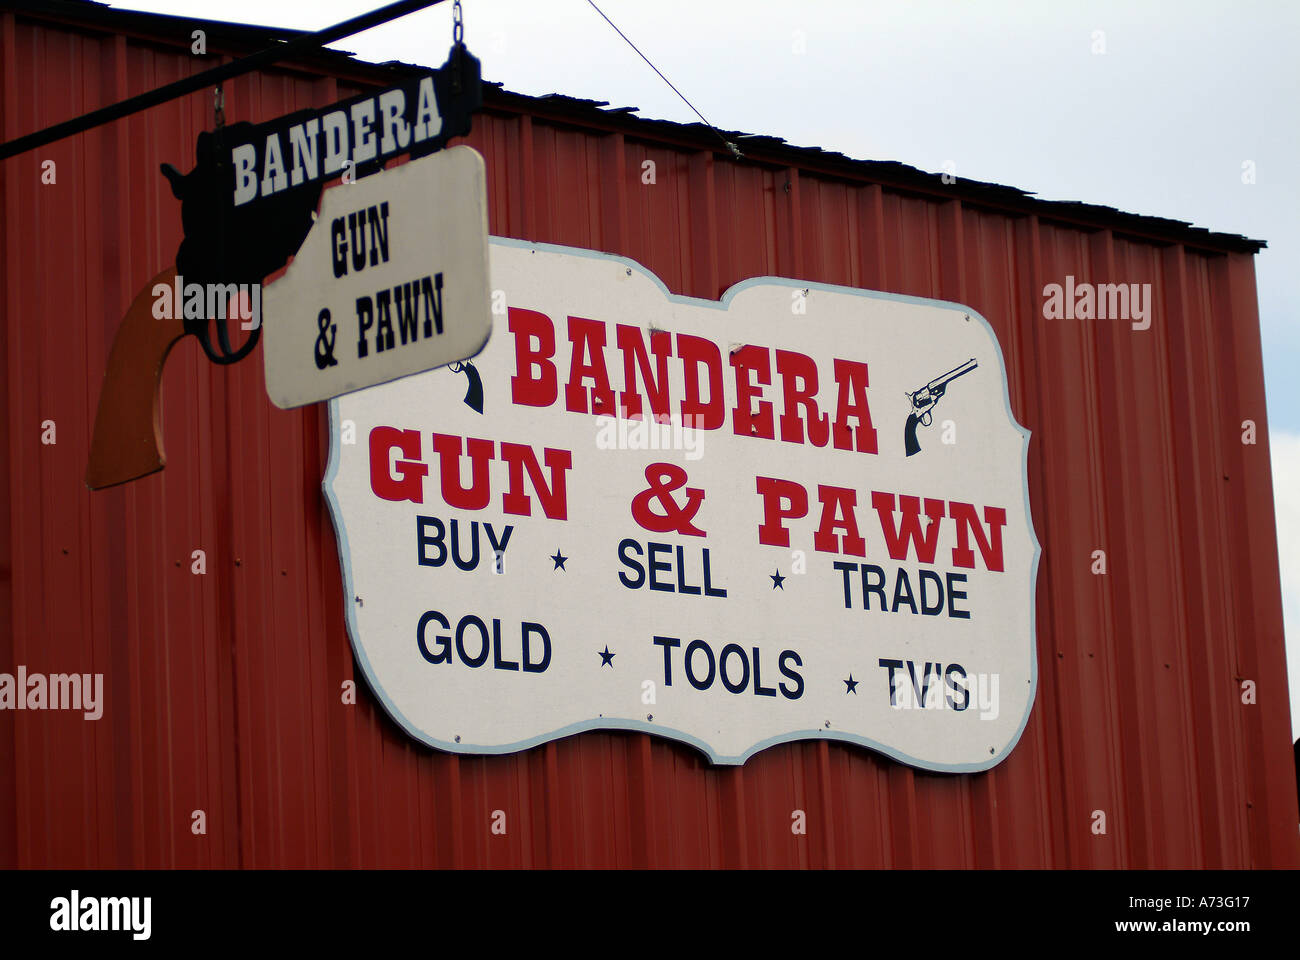 Bandera de pistola y pawn shop Foto de stock